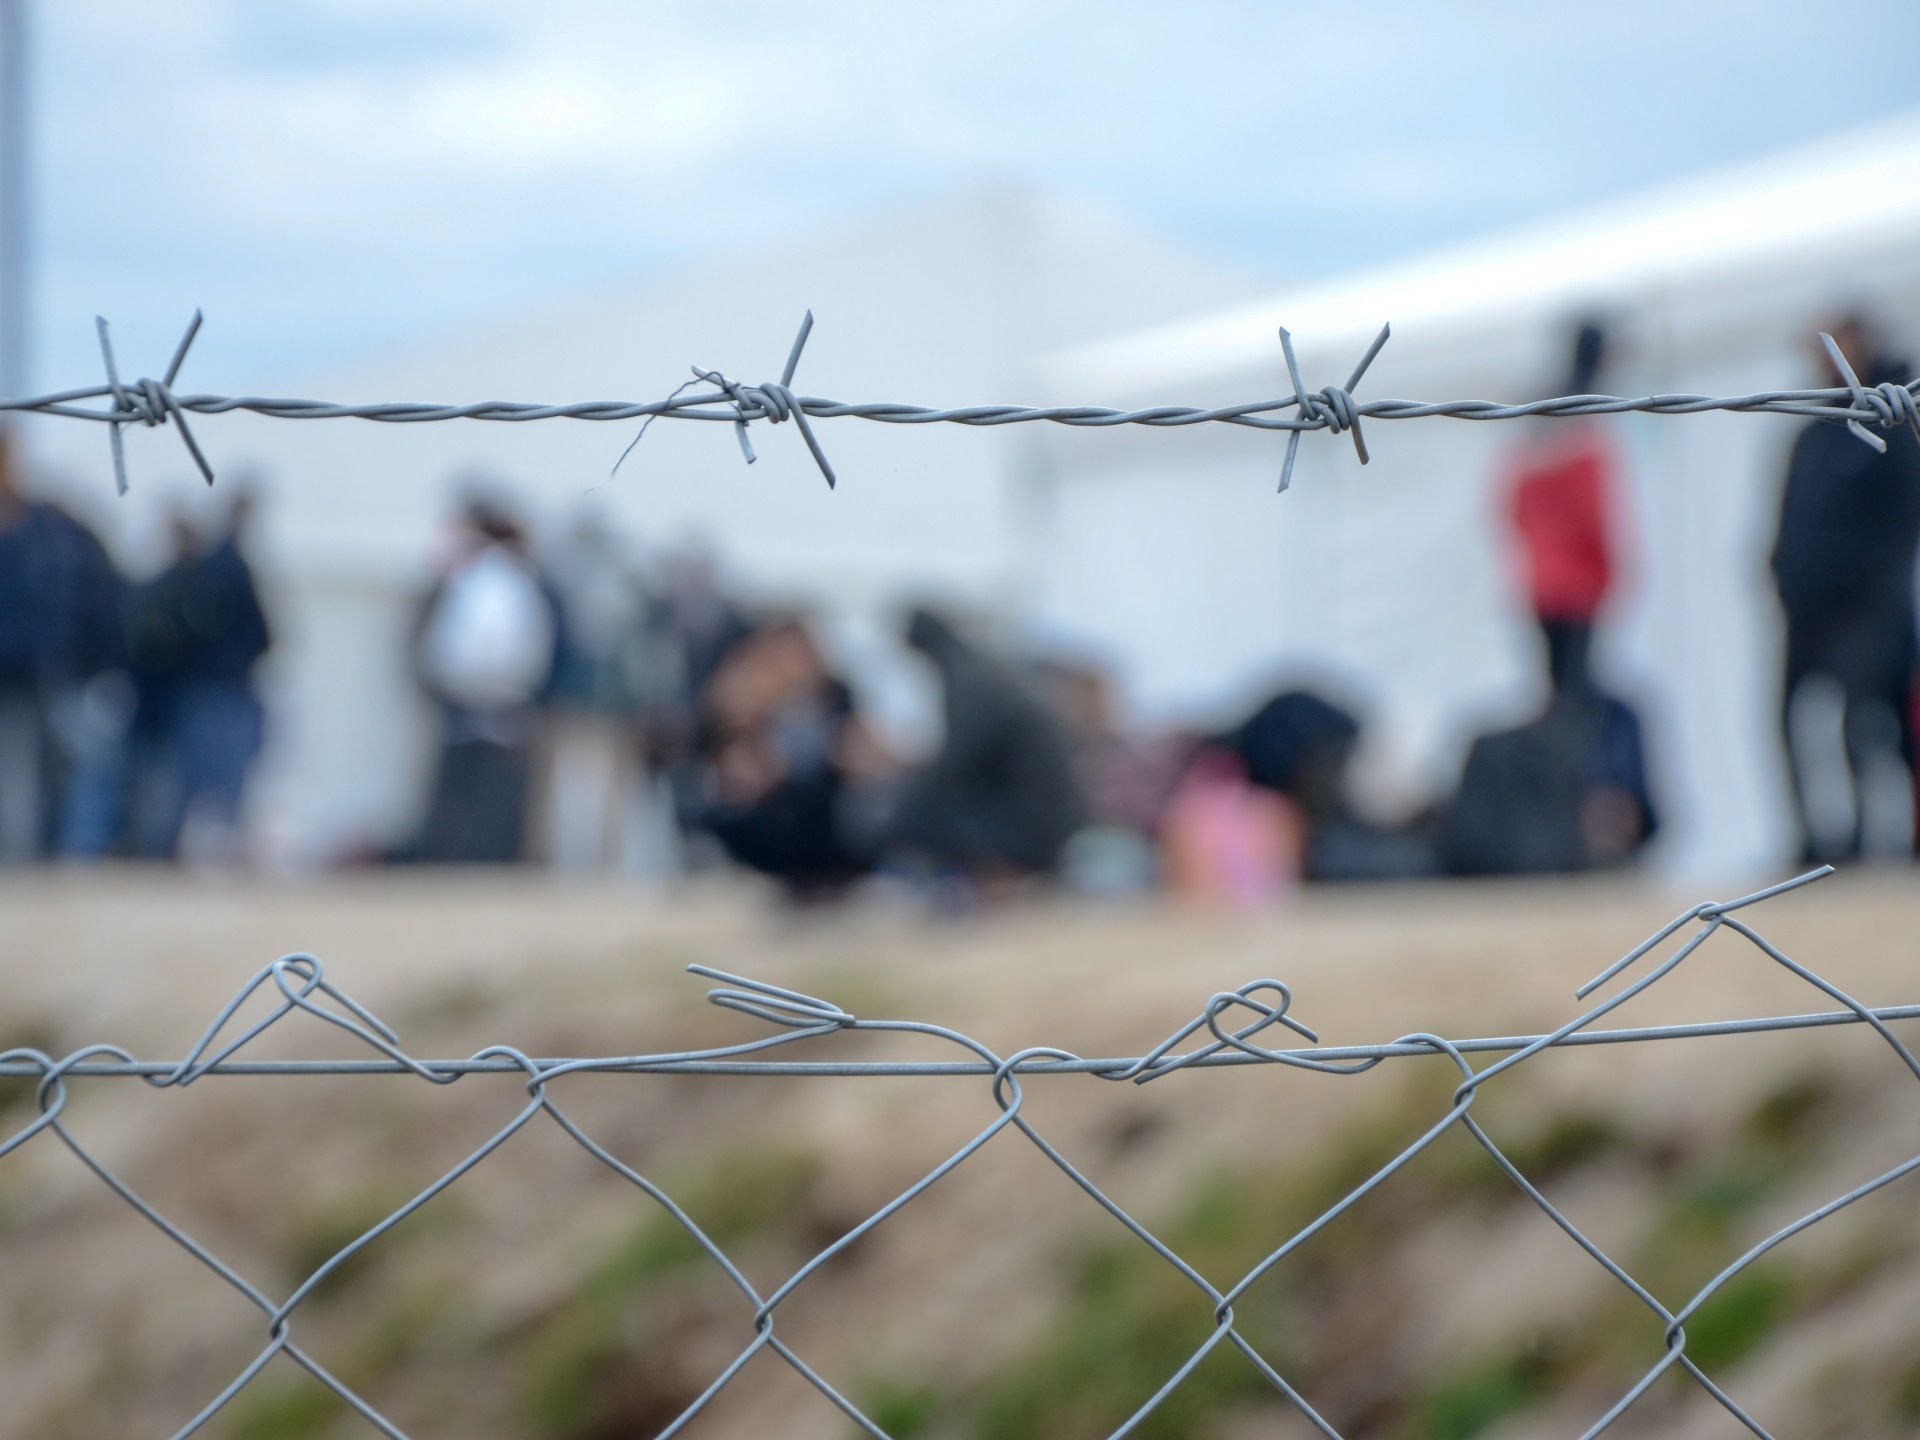 طلبات اللجوء للاتحاد الأوروبي ترتفع لأعلى مستوى منذ 2015 | أخبار – البوكس نيوز